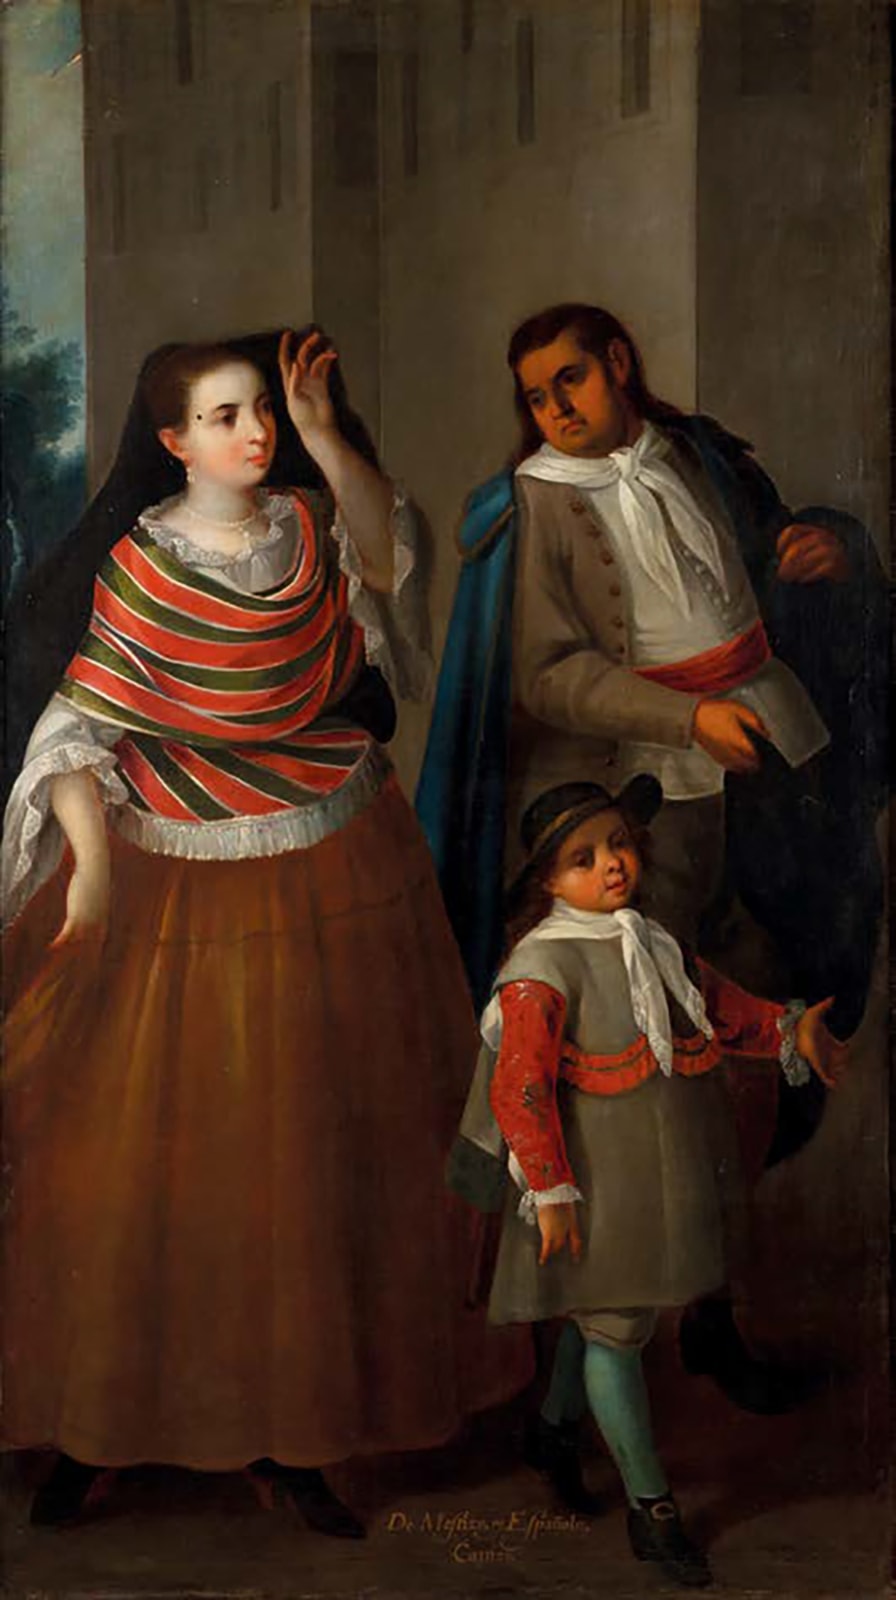 José de Ibarra, De Mestizo, y Española, Castiza, c. 1725